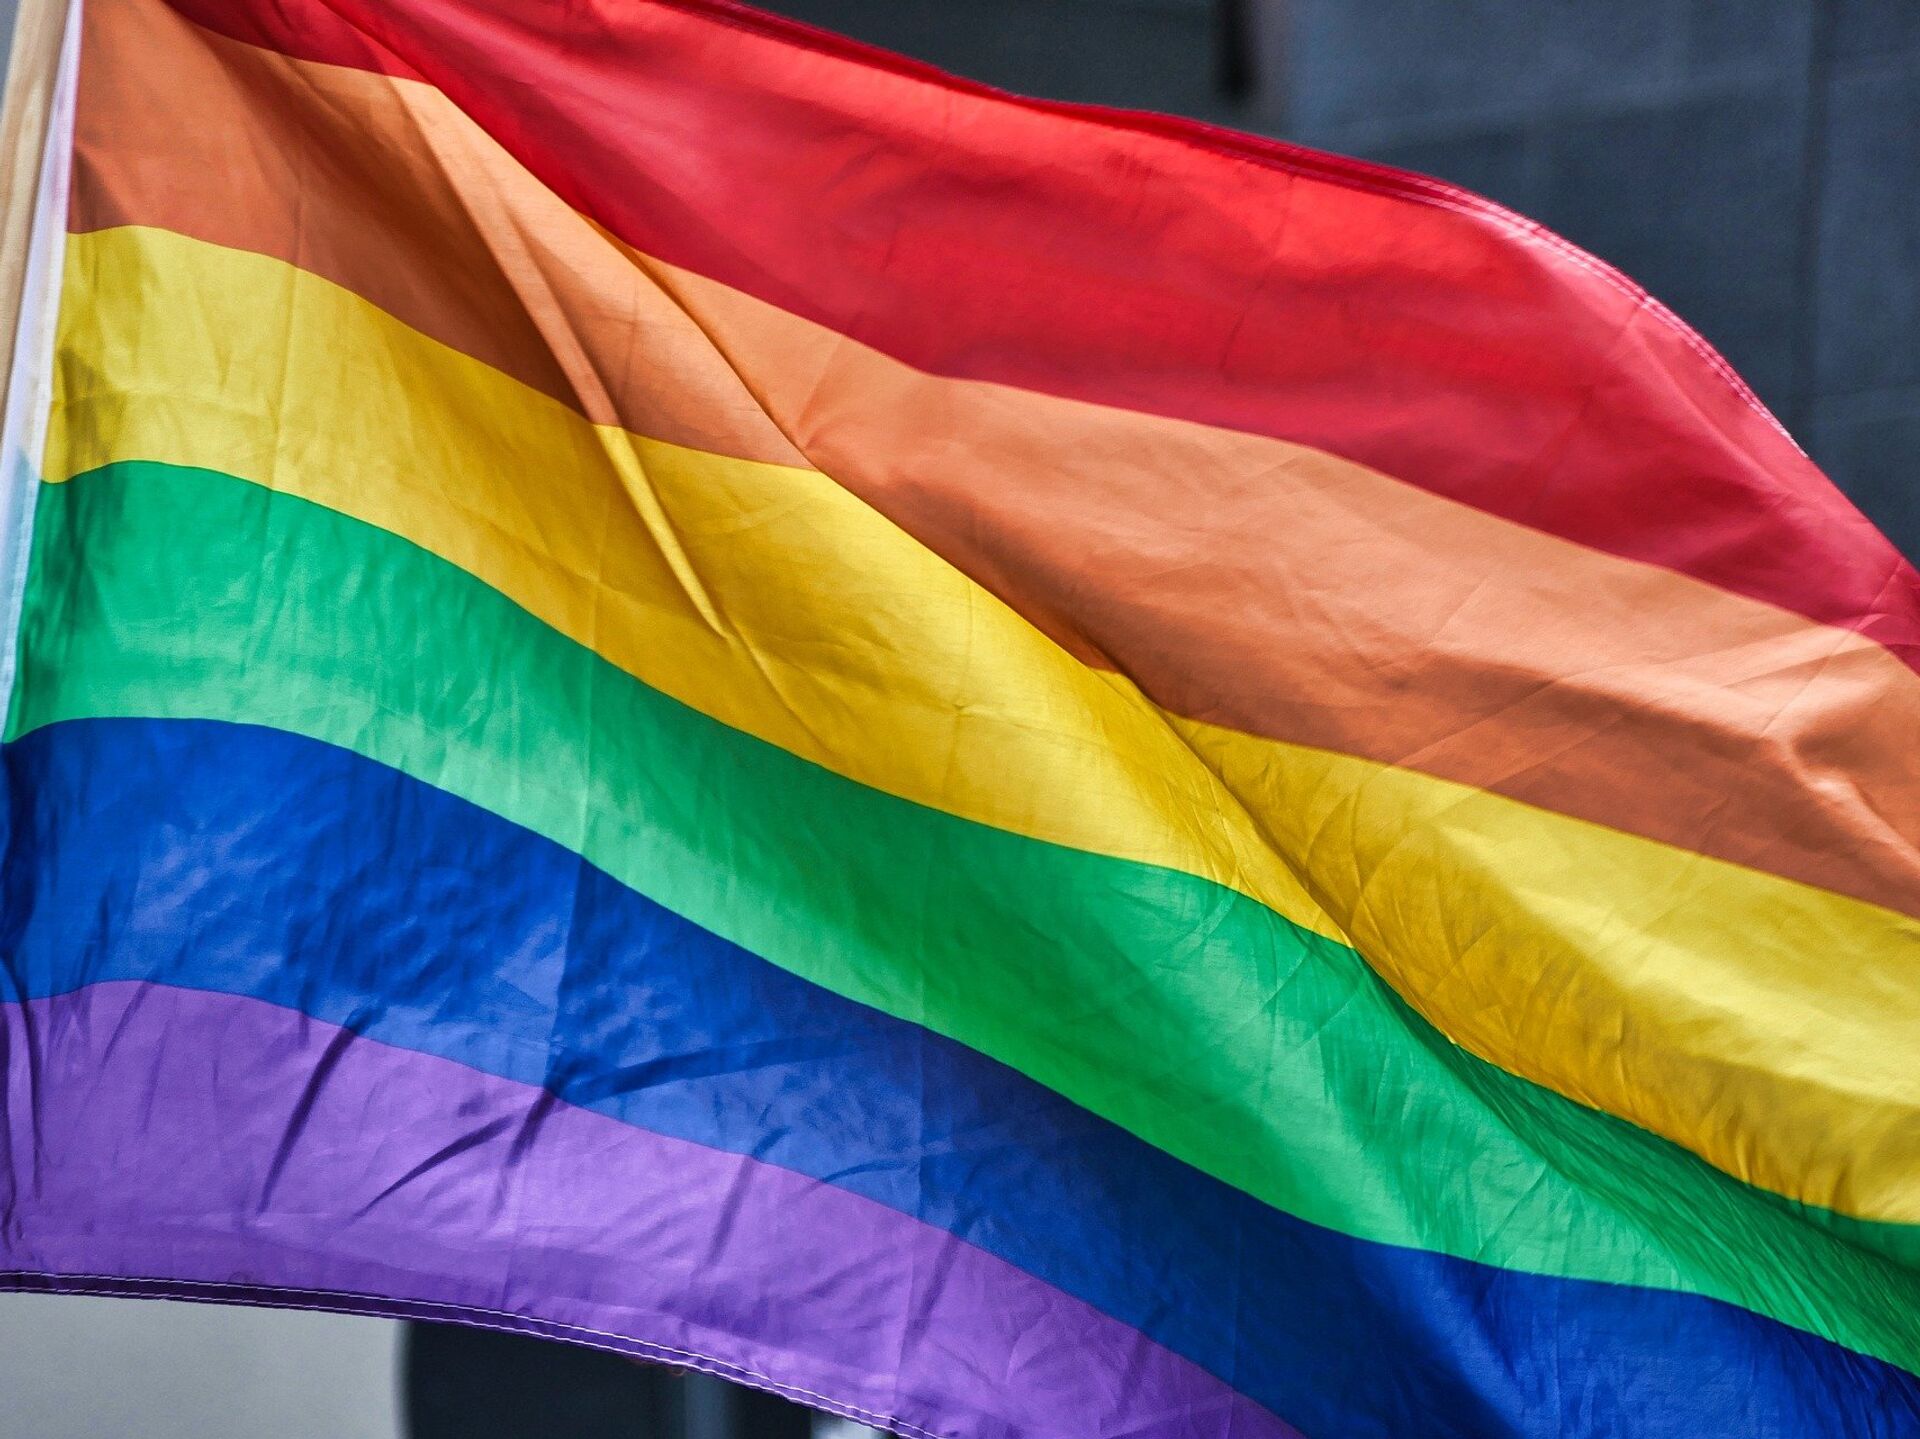 ЛГБТ-извращения проникли в американские школы. Детям дают инструкции |  07.10.2022, ИноСМИ